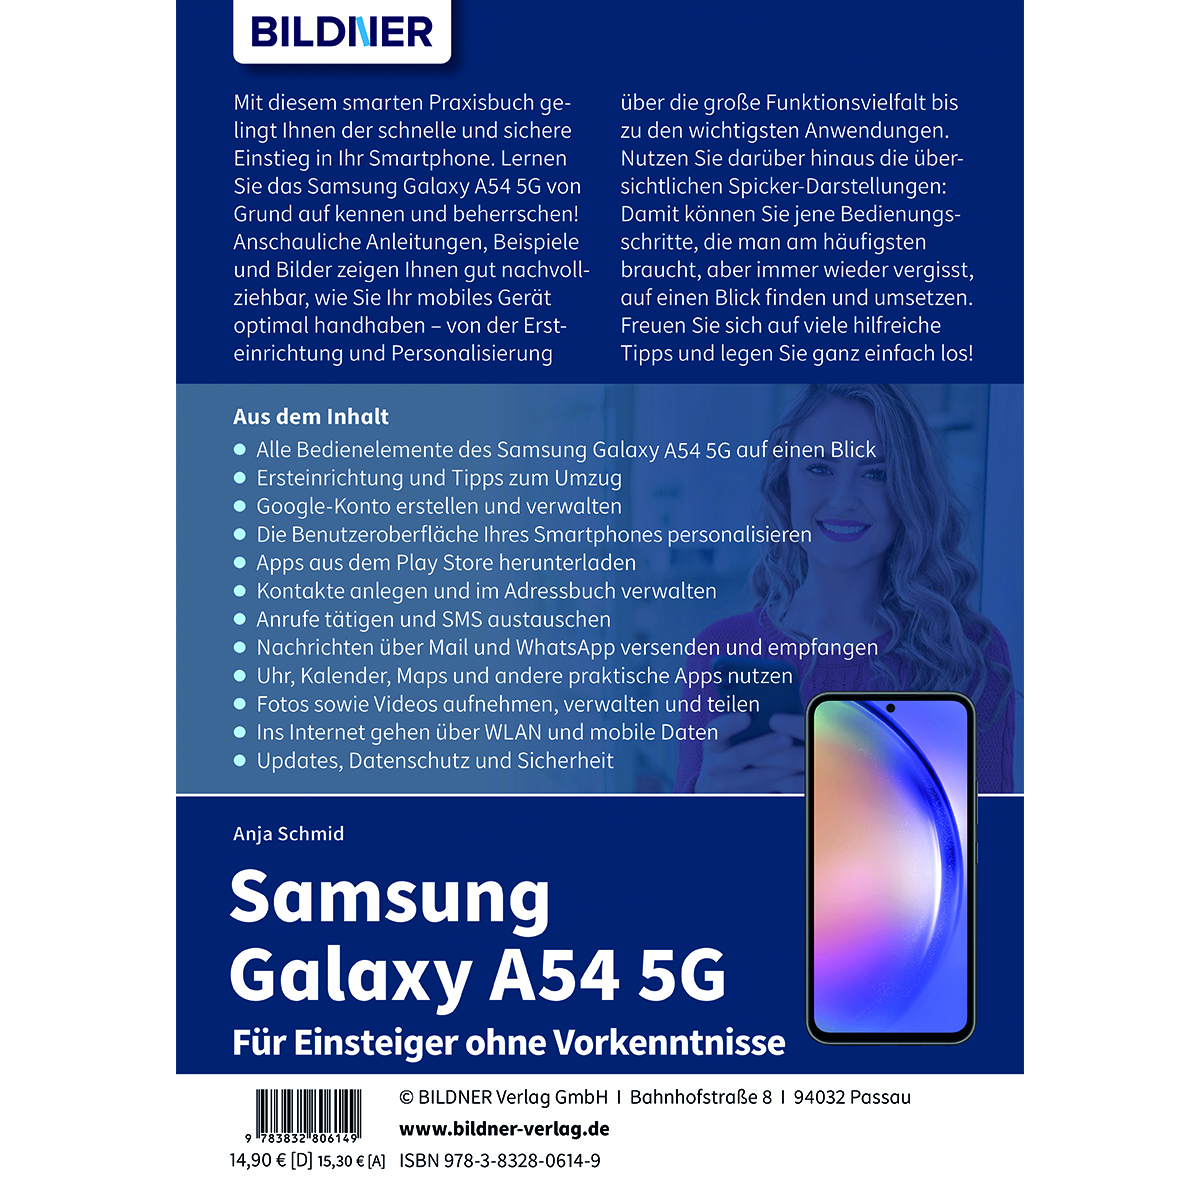 Samsung Galaxy A54 - Einsteiger ohne Für Vorkenntnisse